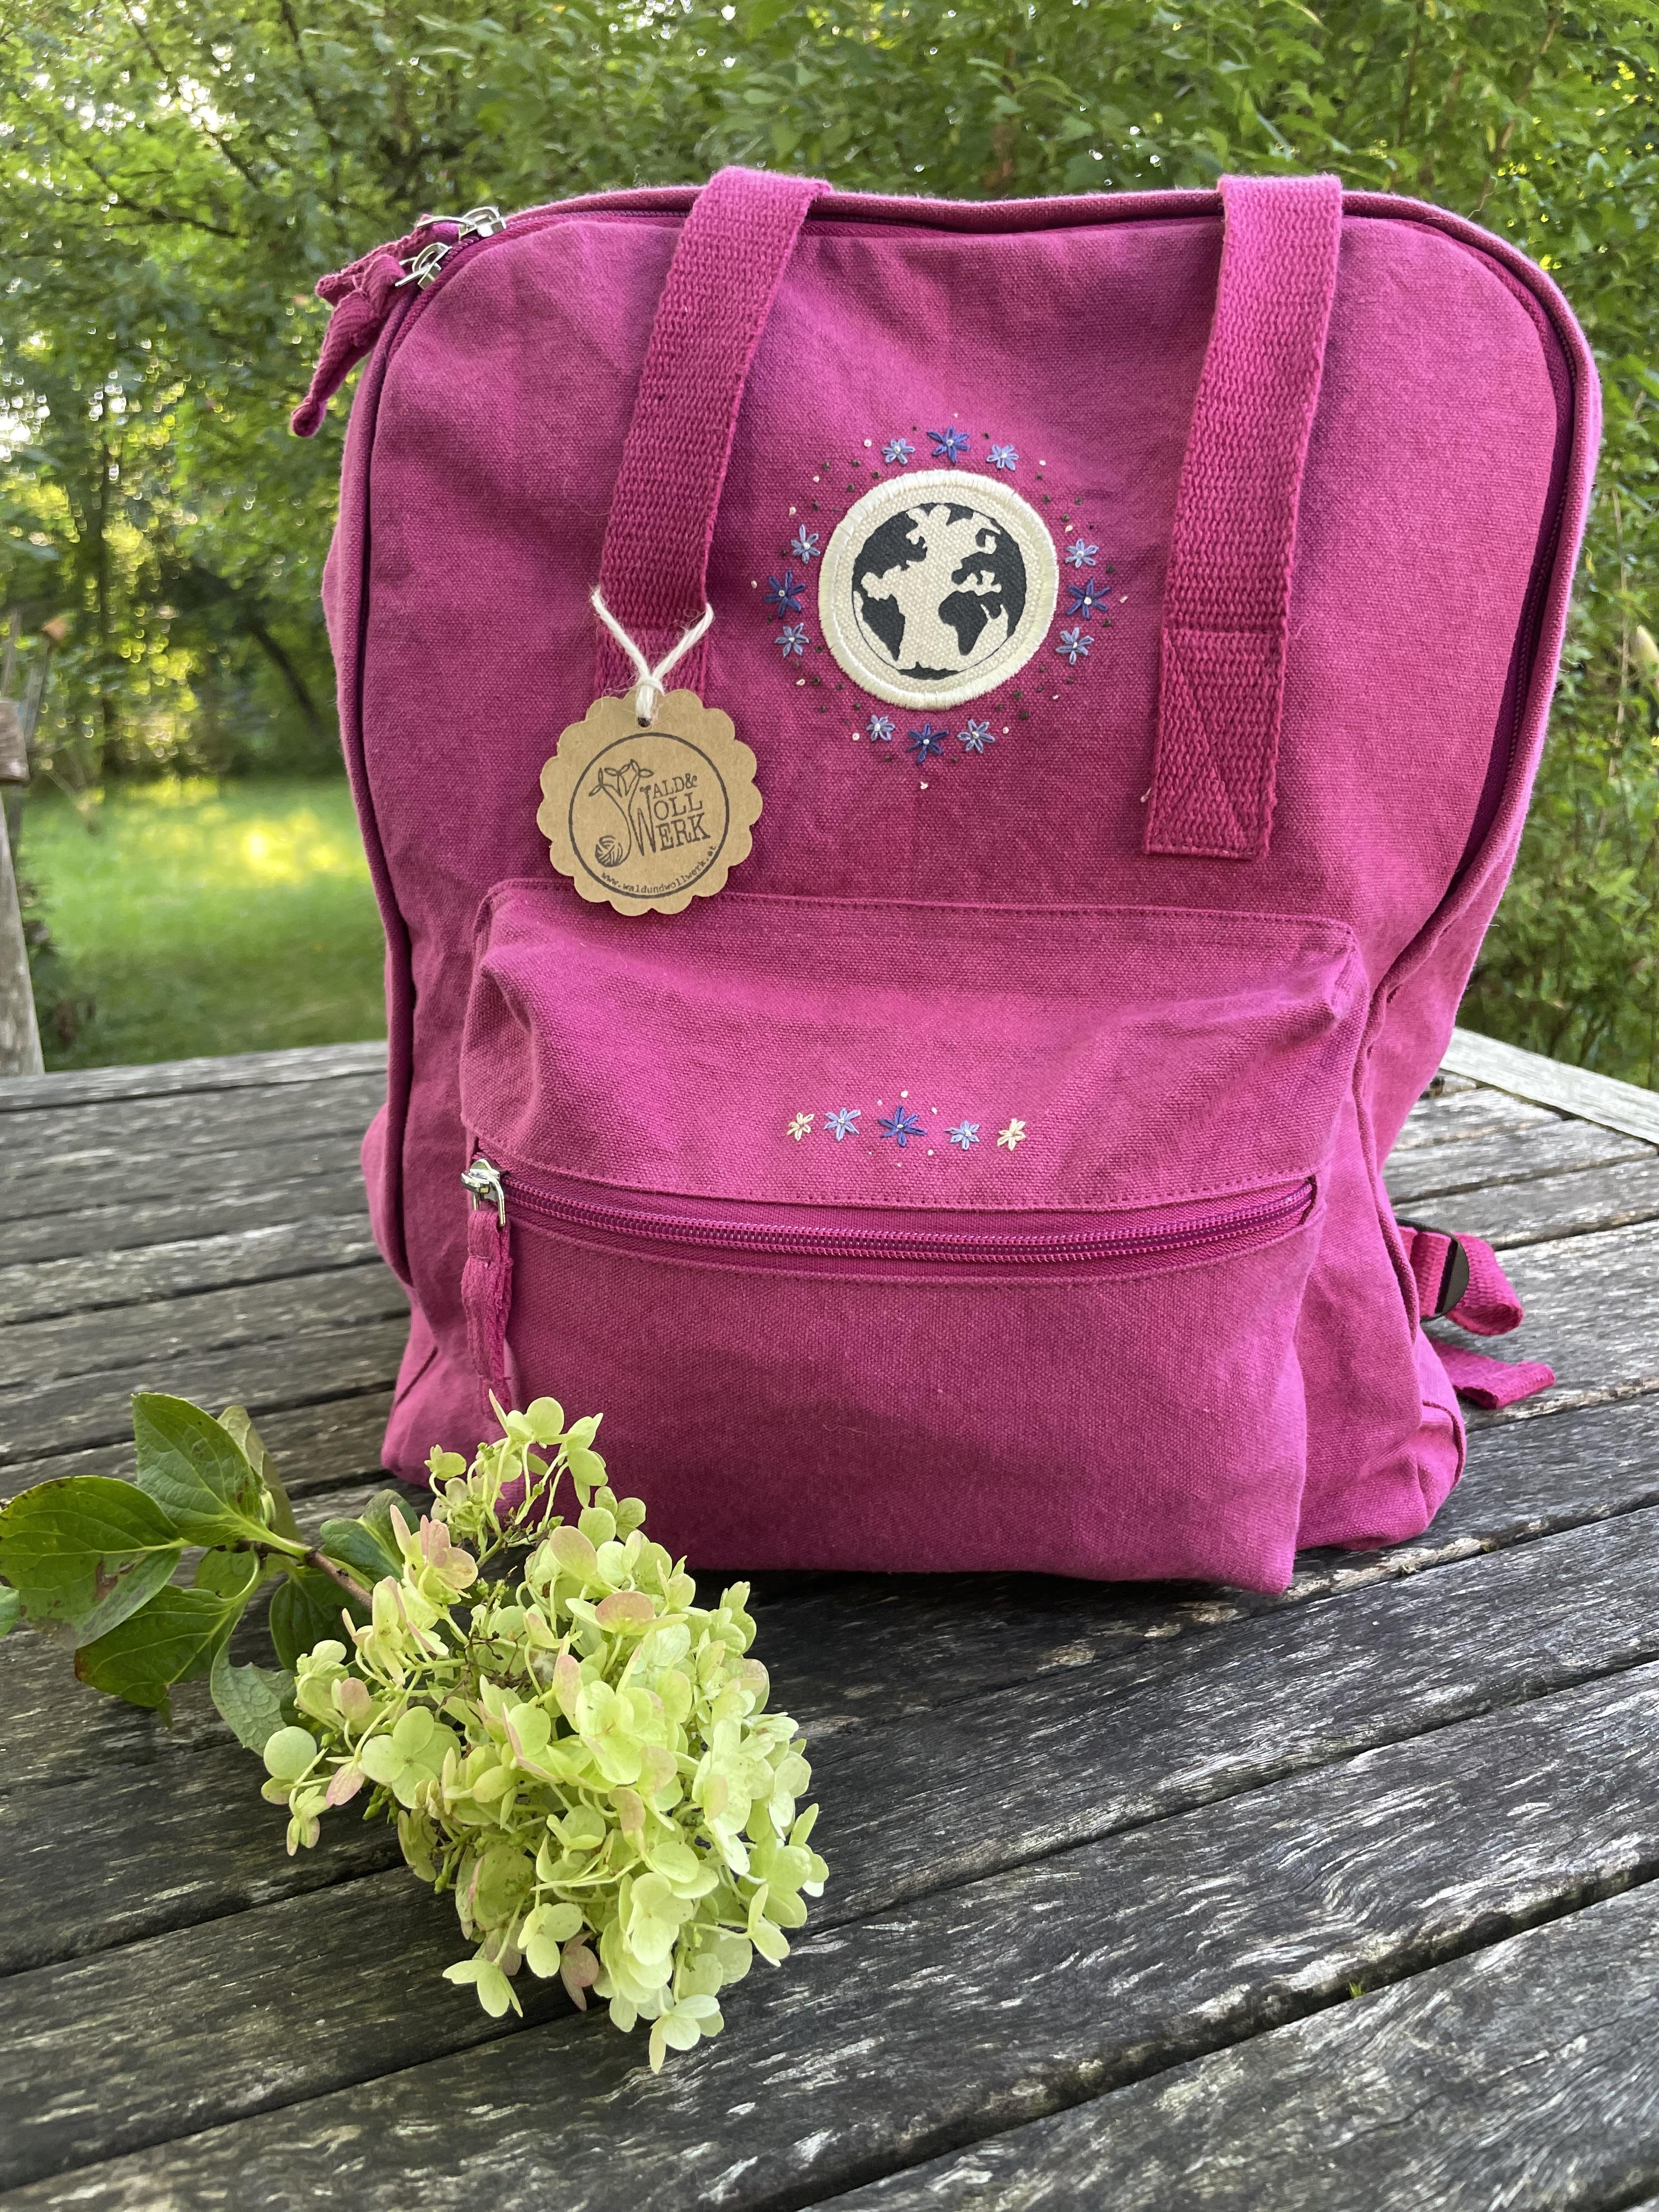 Handbestickter Rucksack pink Blumenranke